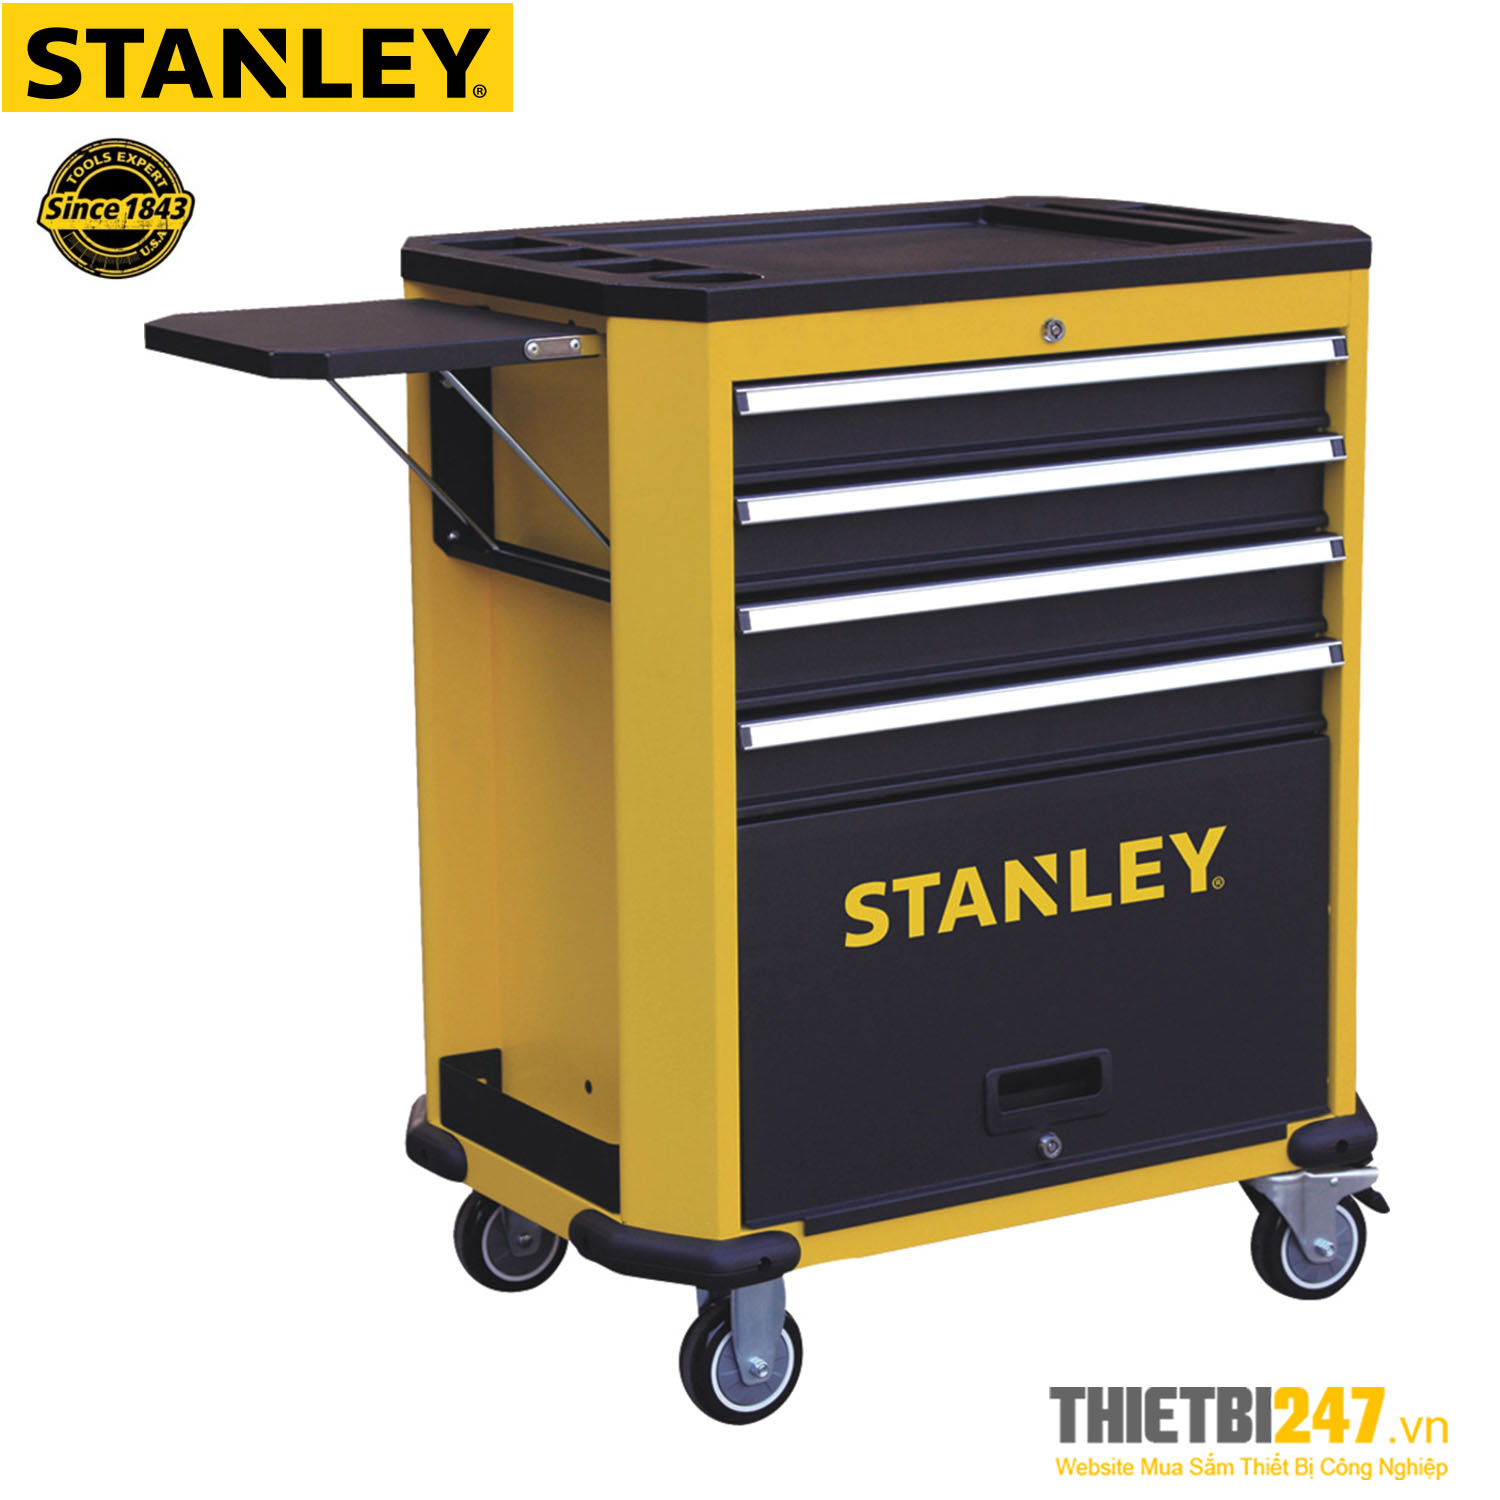 Tủ đựng dụng cụ Stanley 4 ngăn STMT99069-8 698x477x973mm